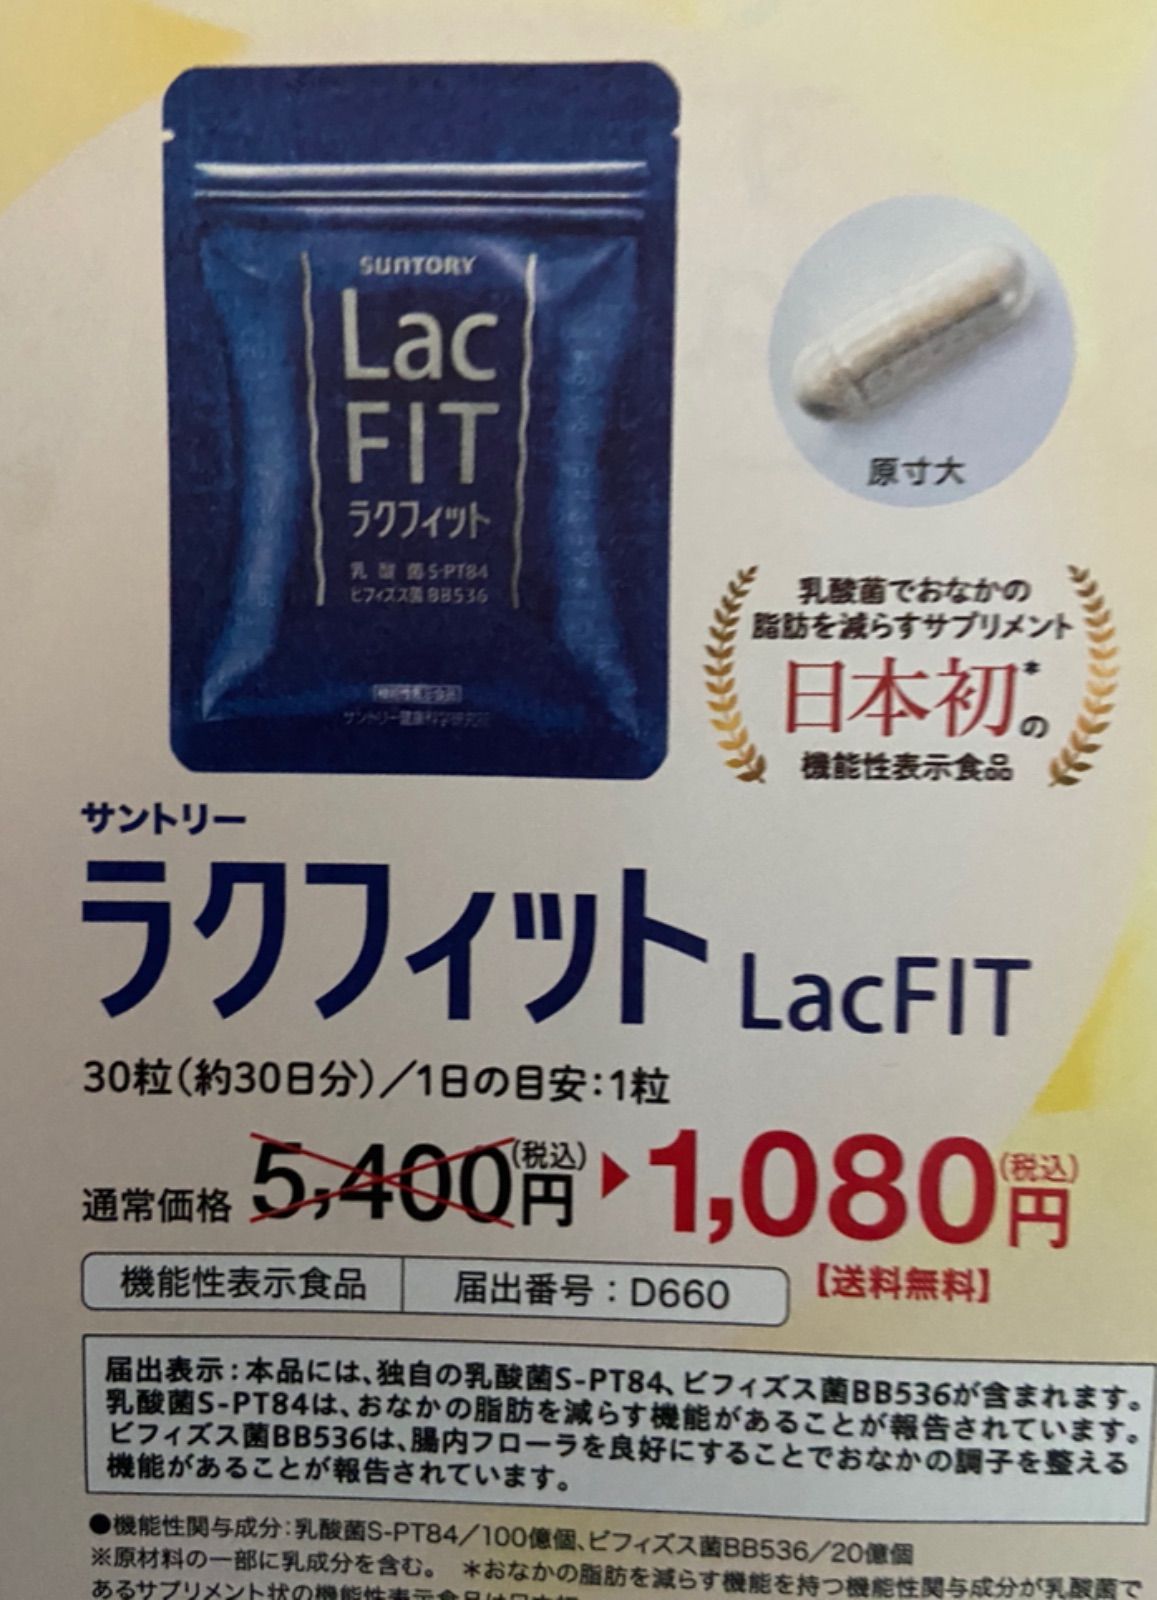 サントリーラクフィット30粒(30日分) - 健康用品